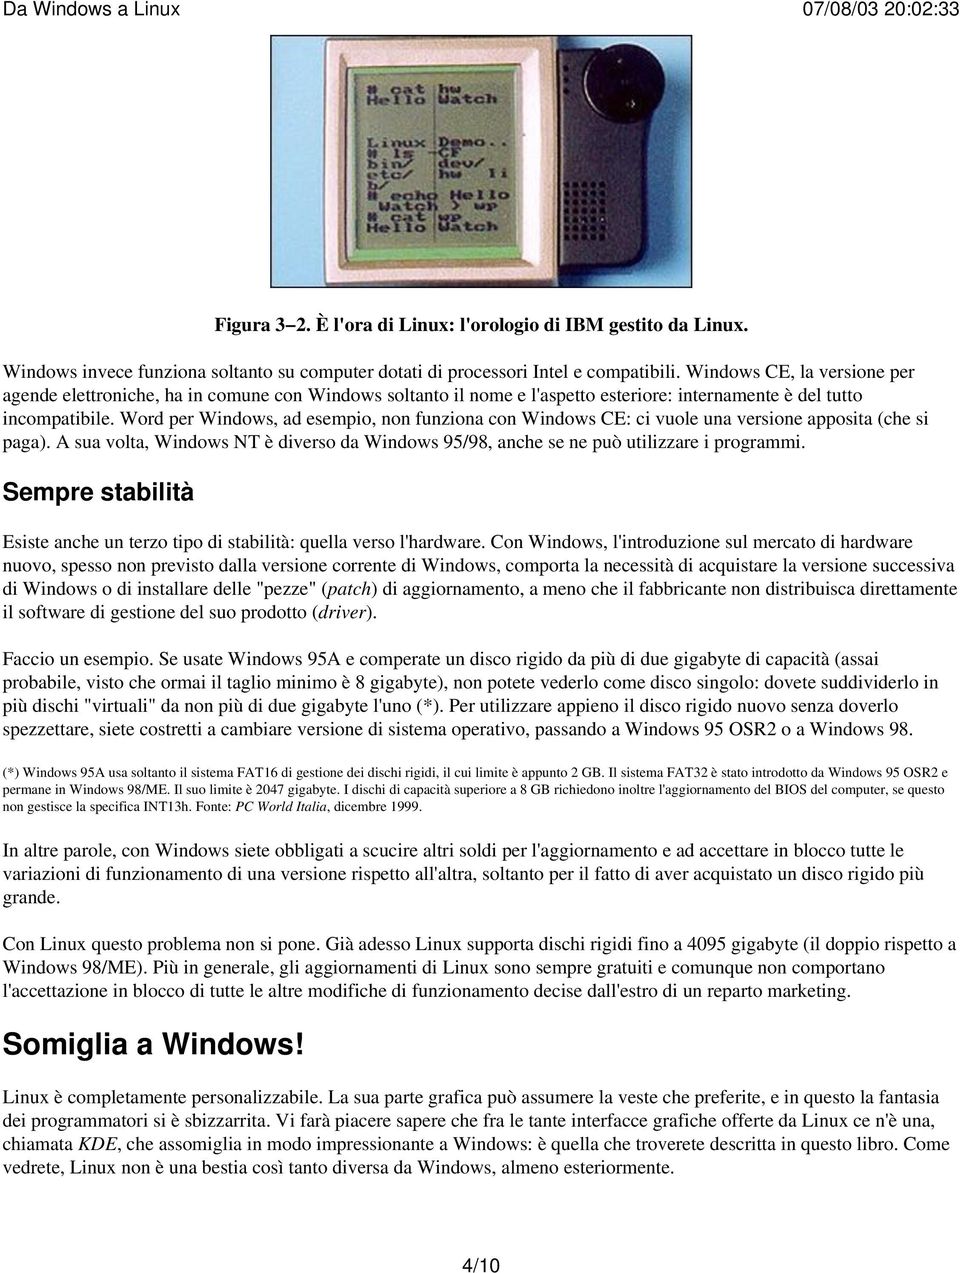 Word per Windows, ad esempio, non funziona con Windows CE: ci vuole una versione apposita (che si paga). A sua volta, Windows NT è diverso da Windows 95/98, anche se ne può utilizzare i programmi.